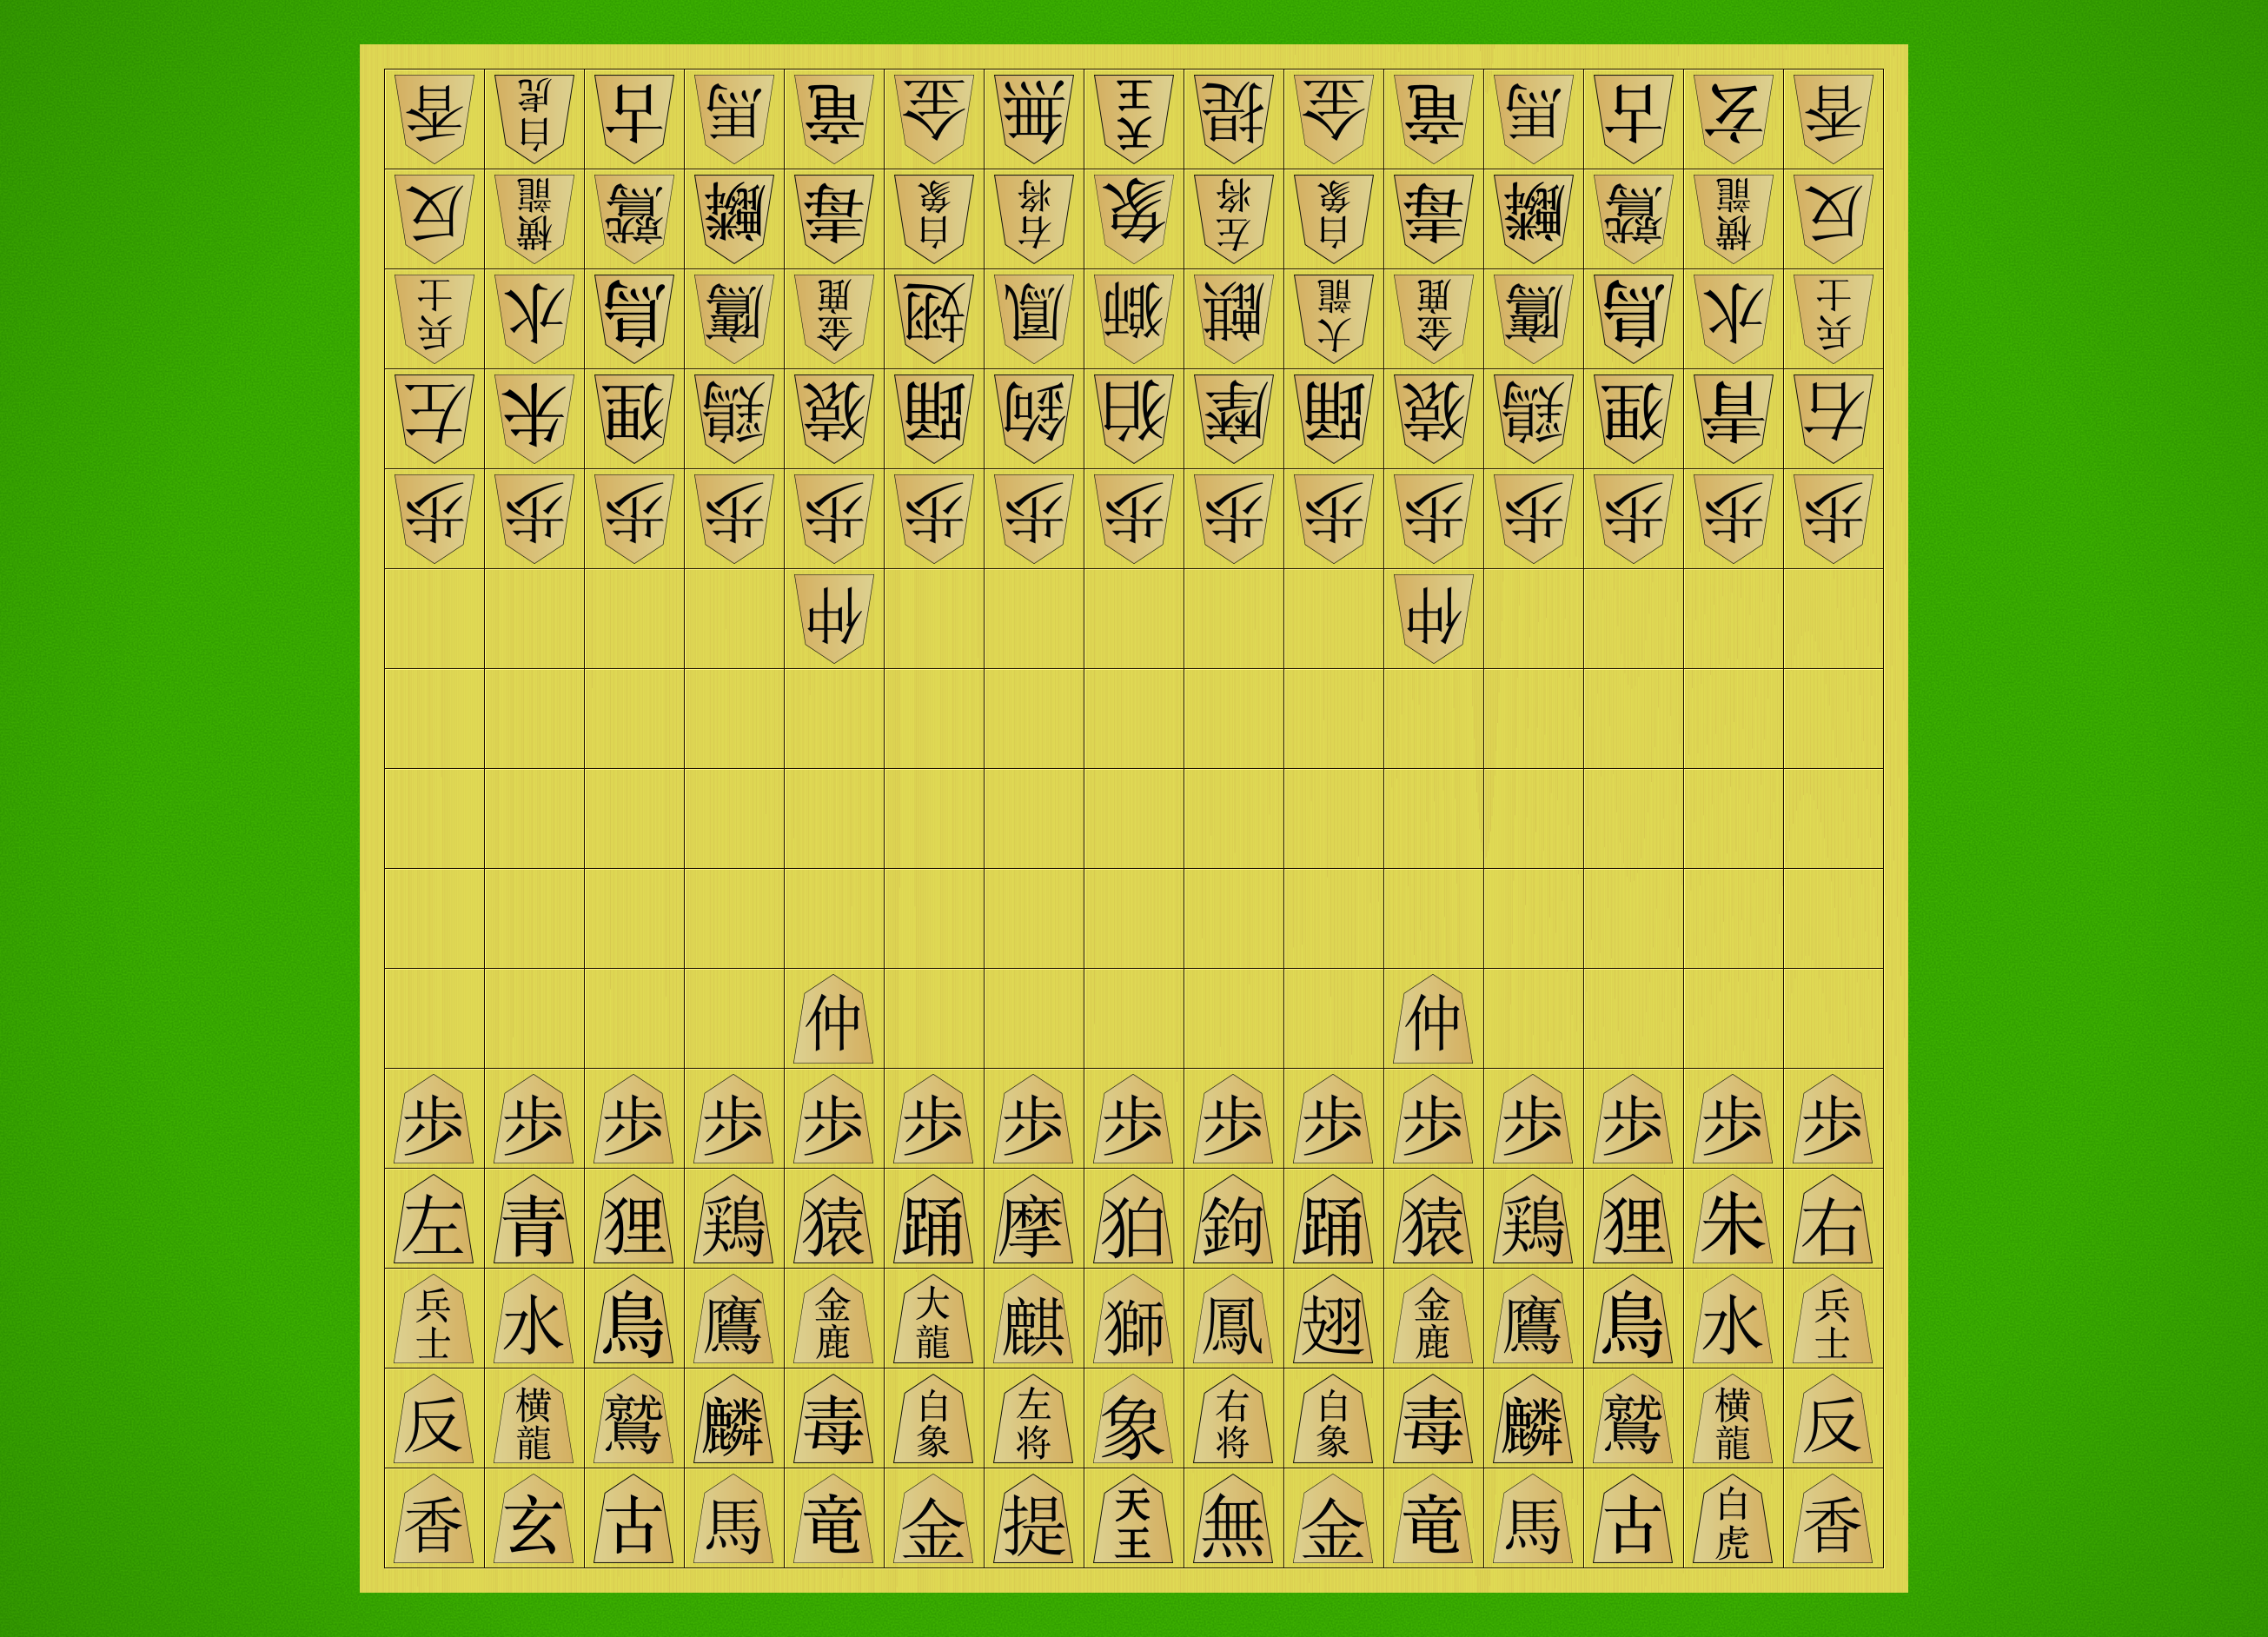 Tai Shogi, Board Game